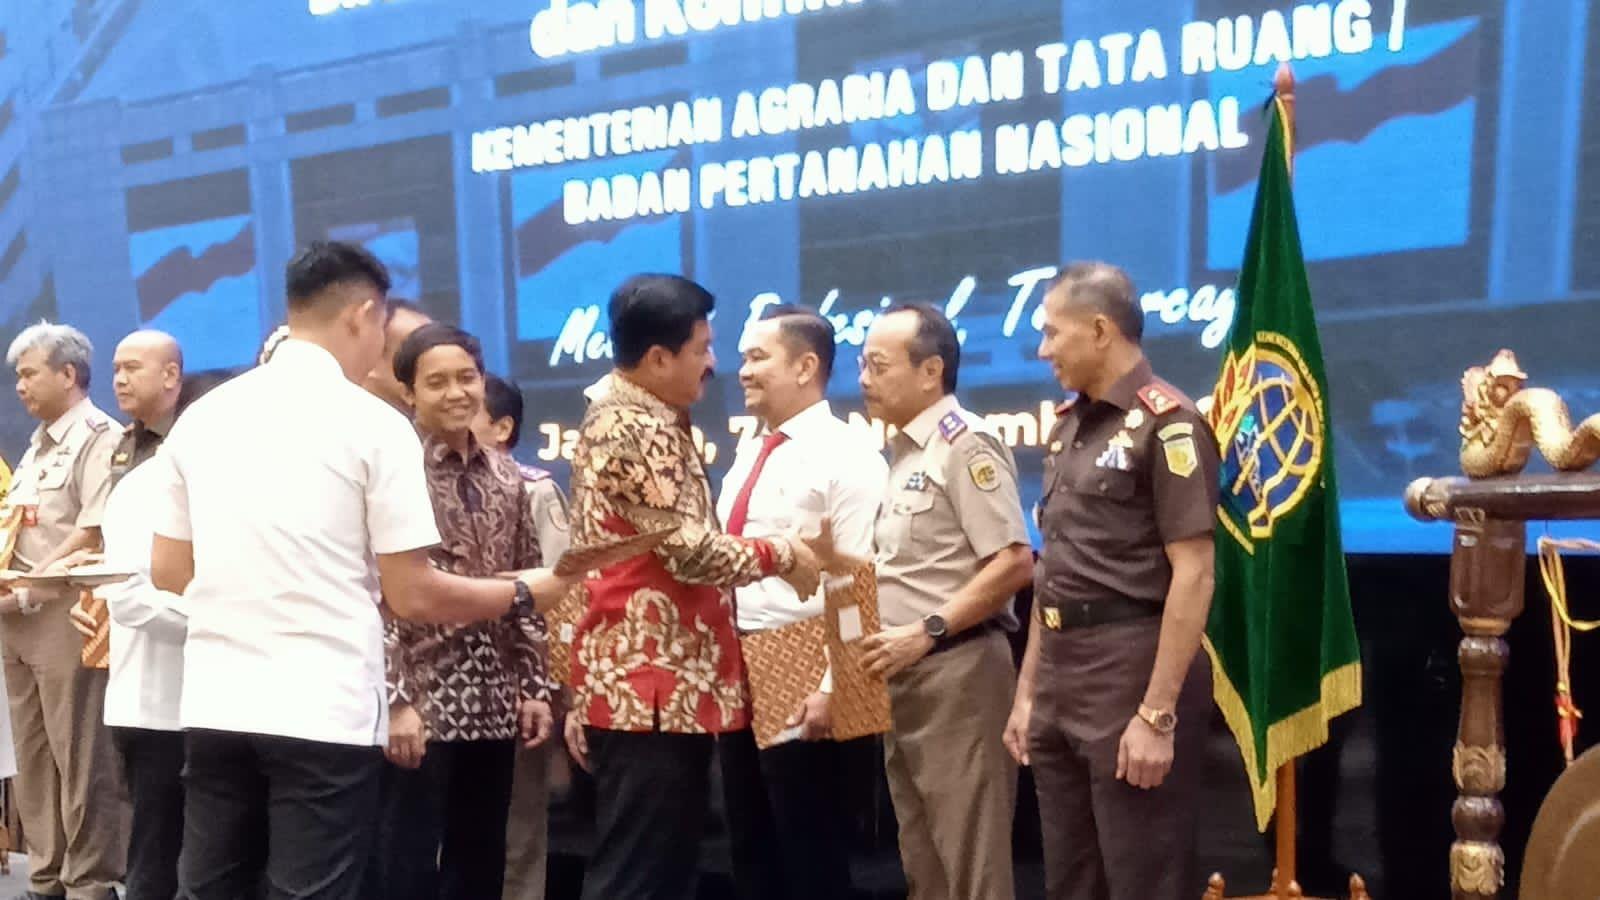 Menteri ATR/Kepala BPN memberikan penghargaan berupa pin emas kepada sejumlah jajaran dalam empat pilar yang tergabung dalam Satgas Anti Mafia Tanah. foto: ist